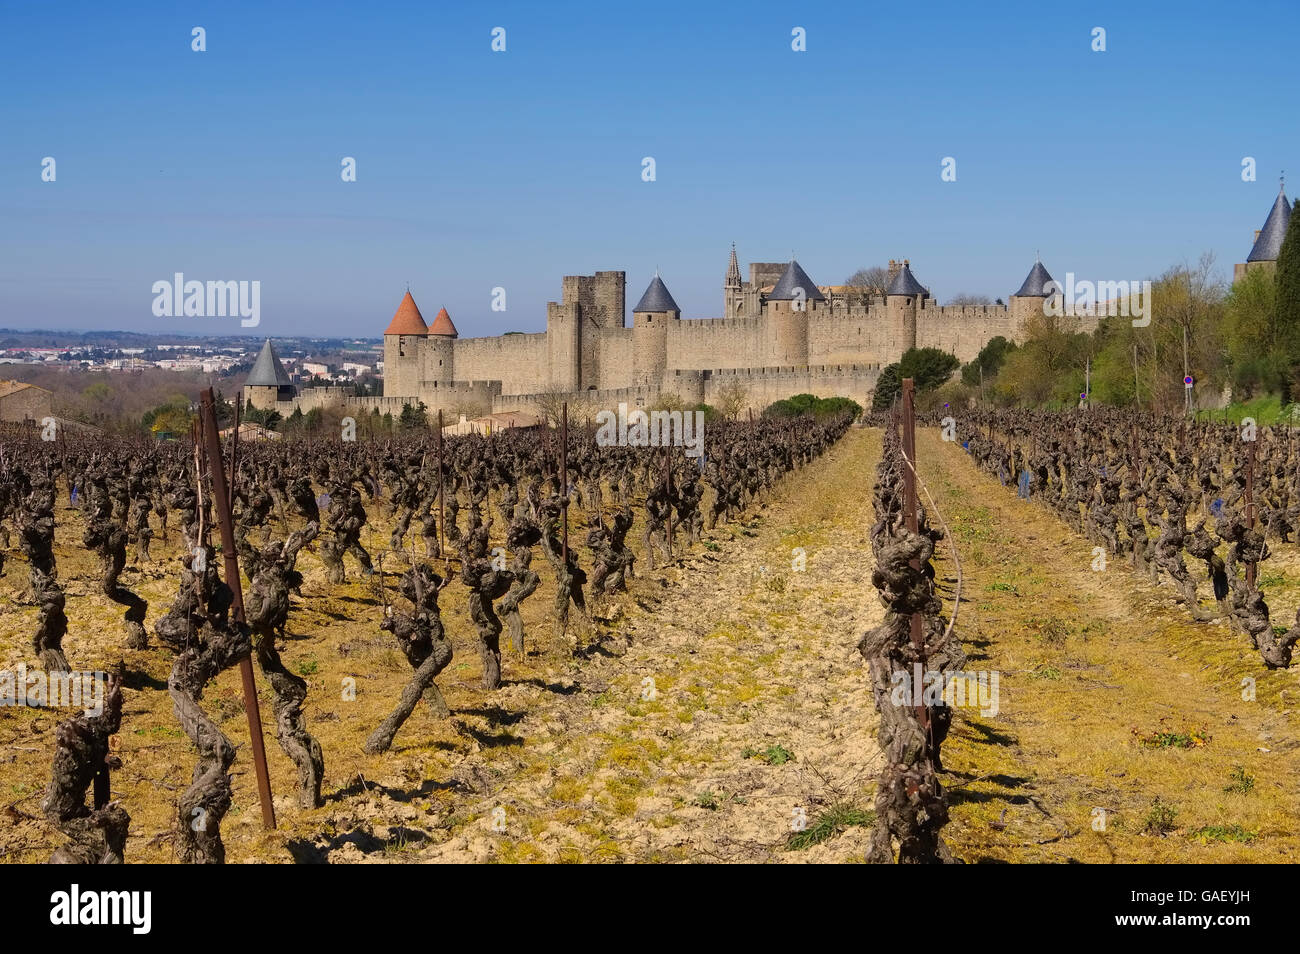 Citer von Carcassonne Weinberg - Château de Carcassonne et de la vigne en hiver, dans le sud de la France Banque D'Images